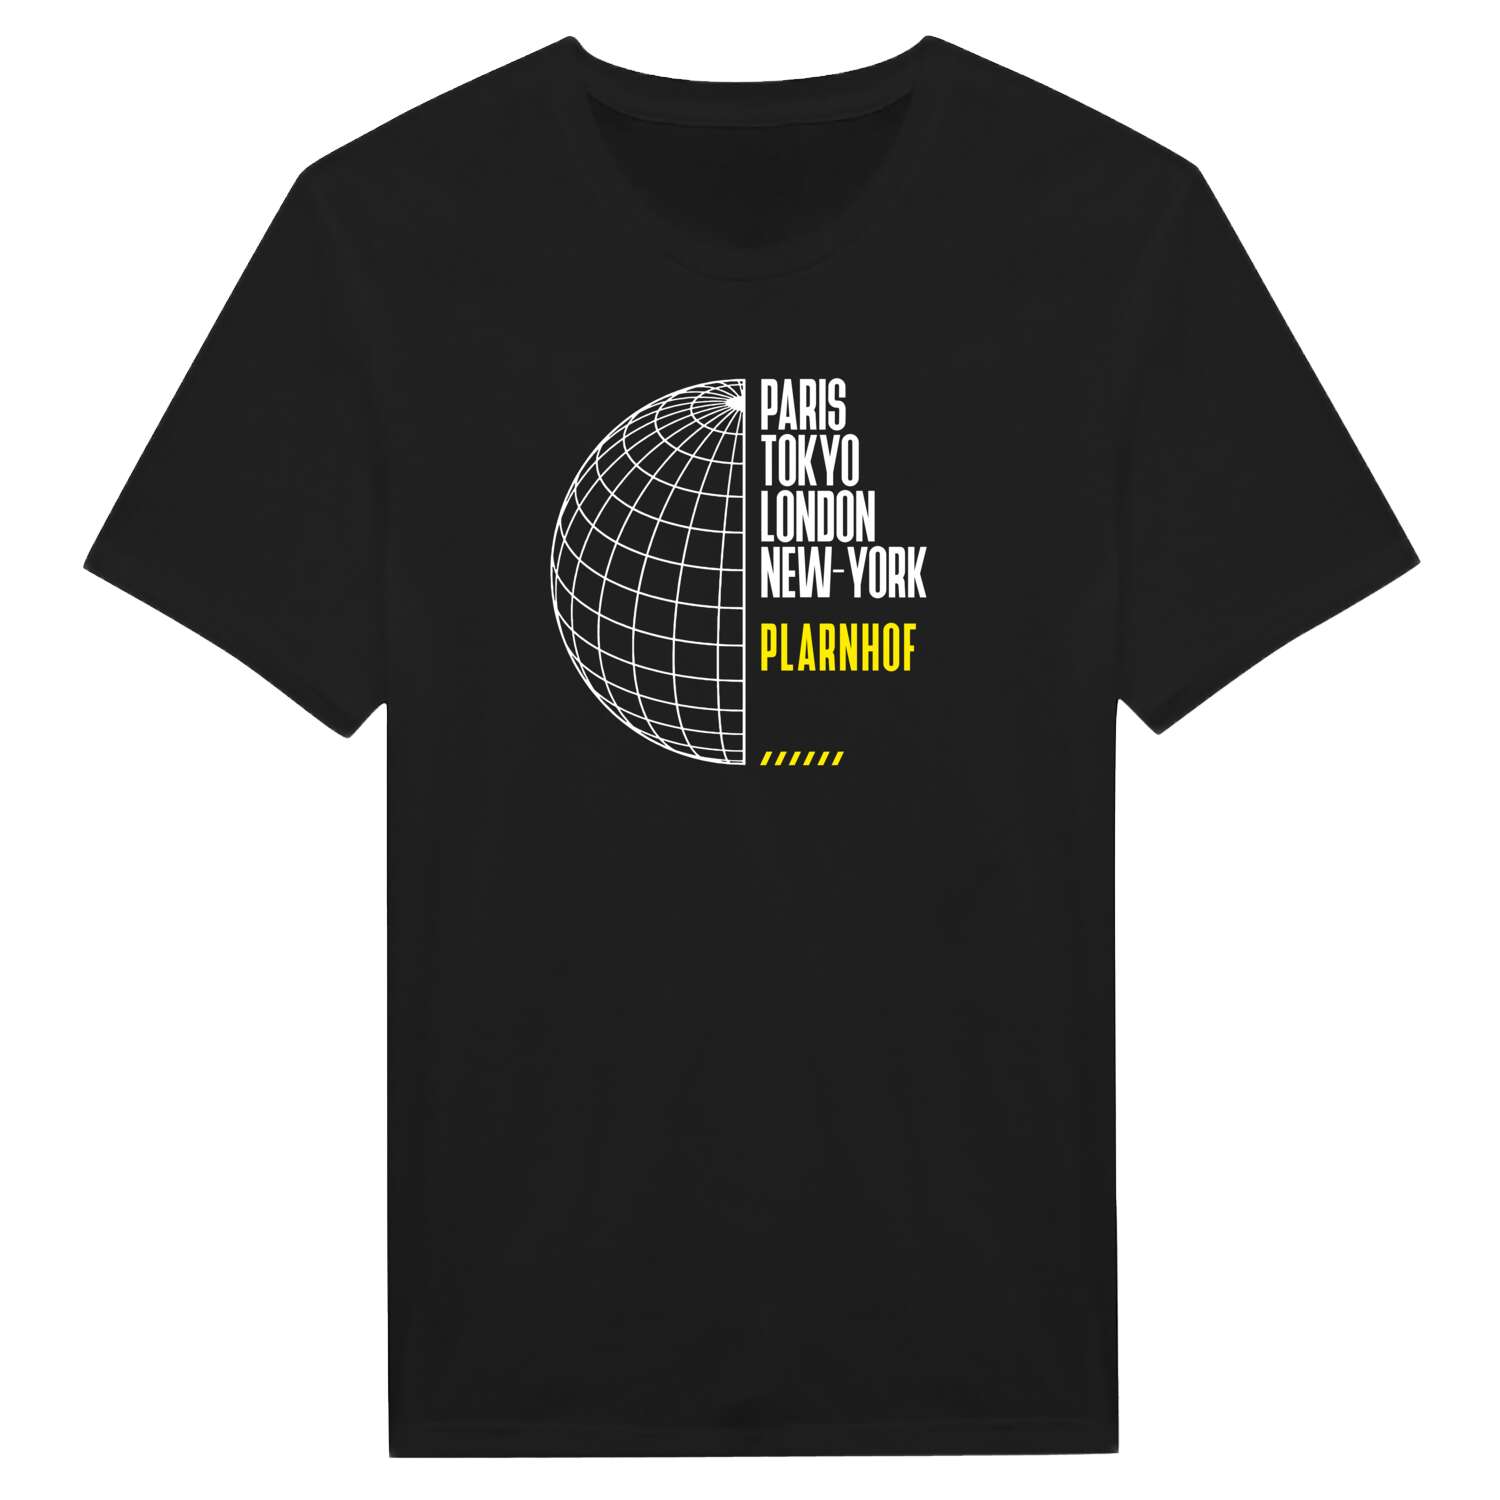 Plarnhof T-Shirt »Paris Tokyo London«